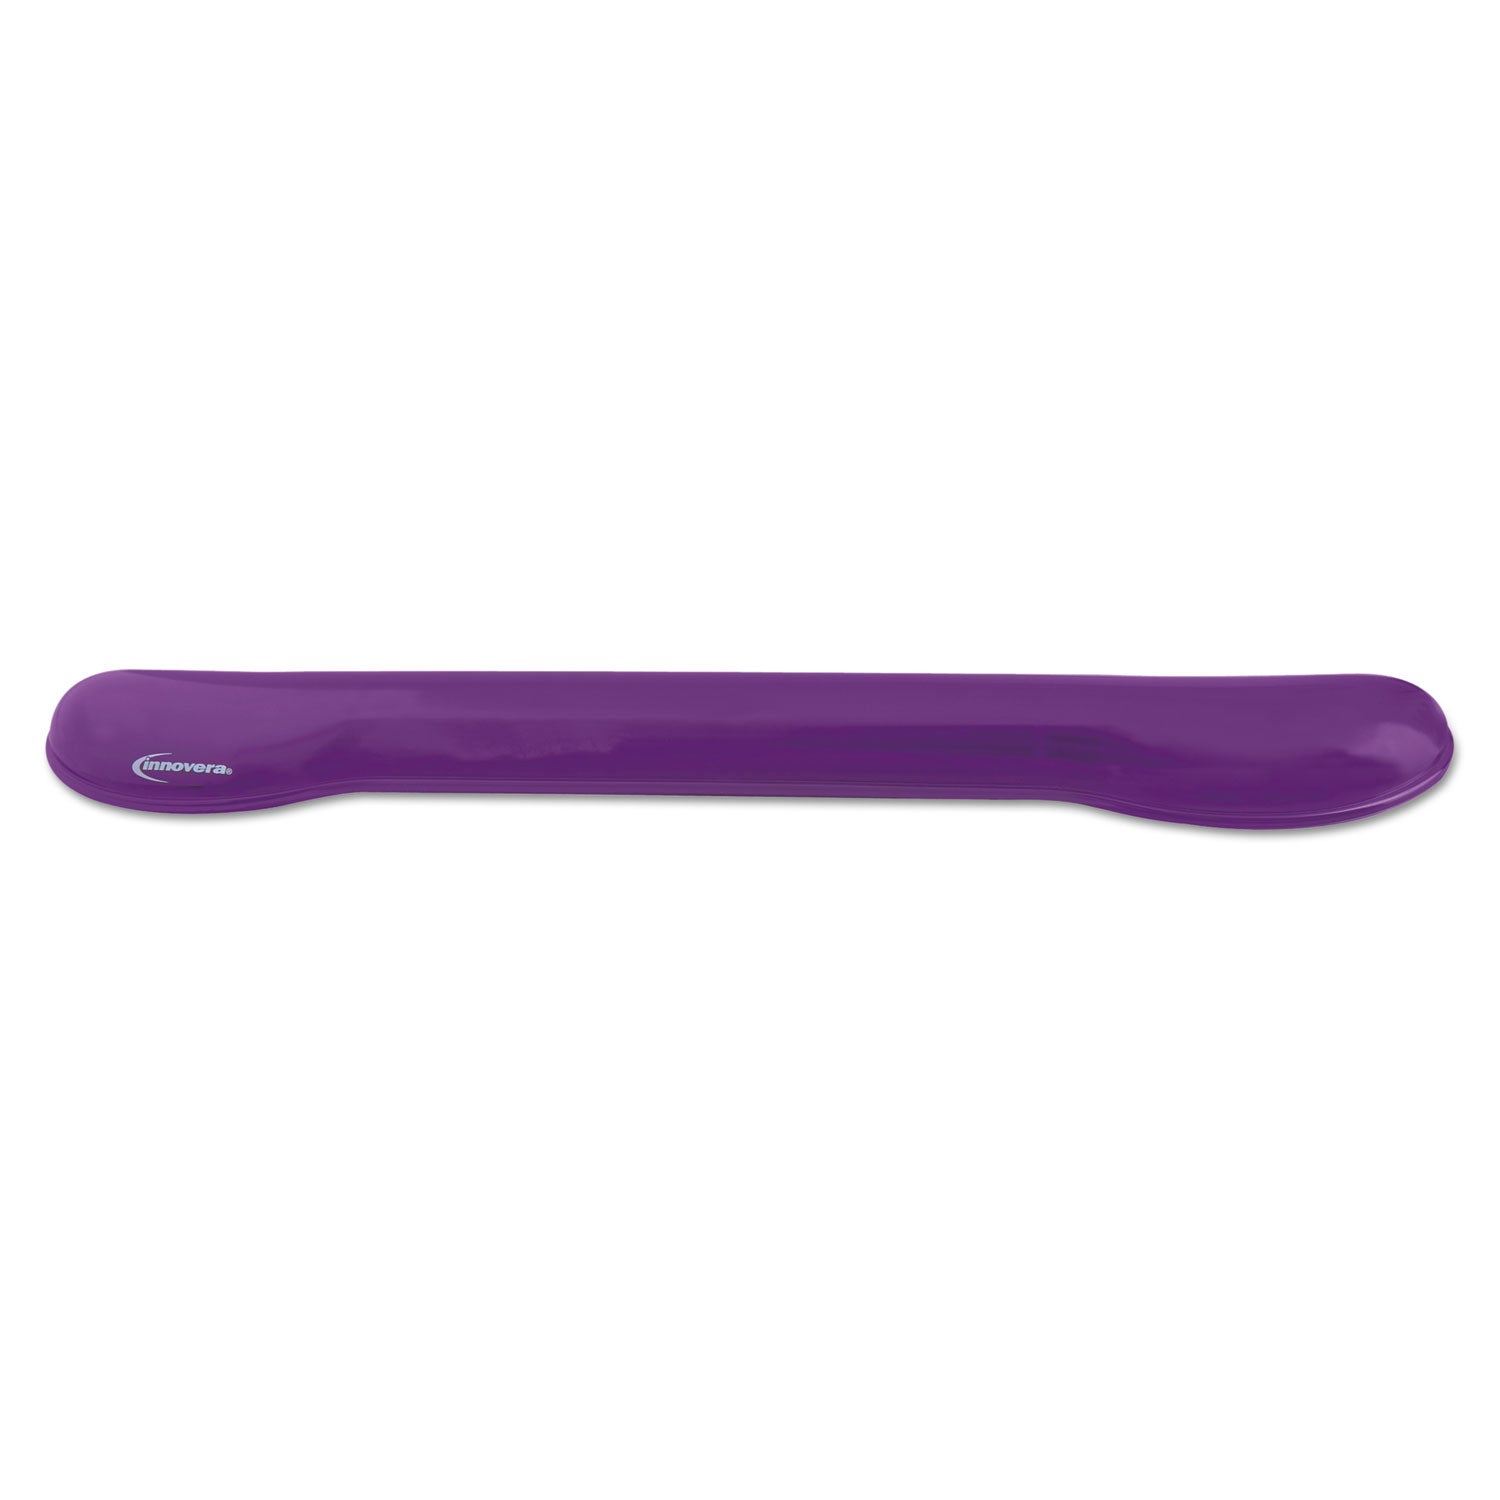 Gel Keyboard Wrist Rest, 18.25 x 2.87, Purple - 